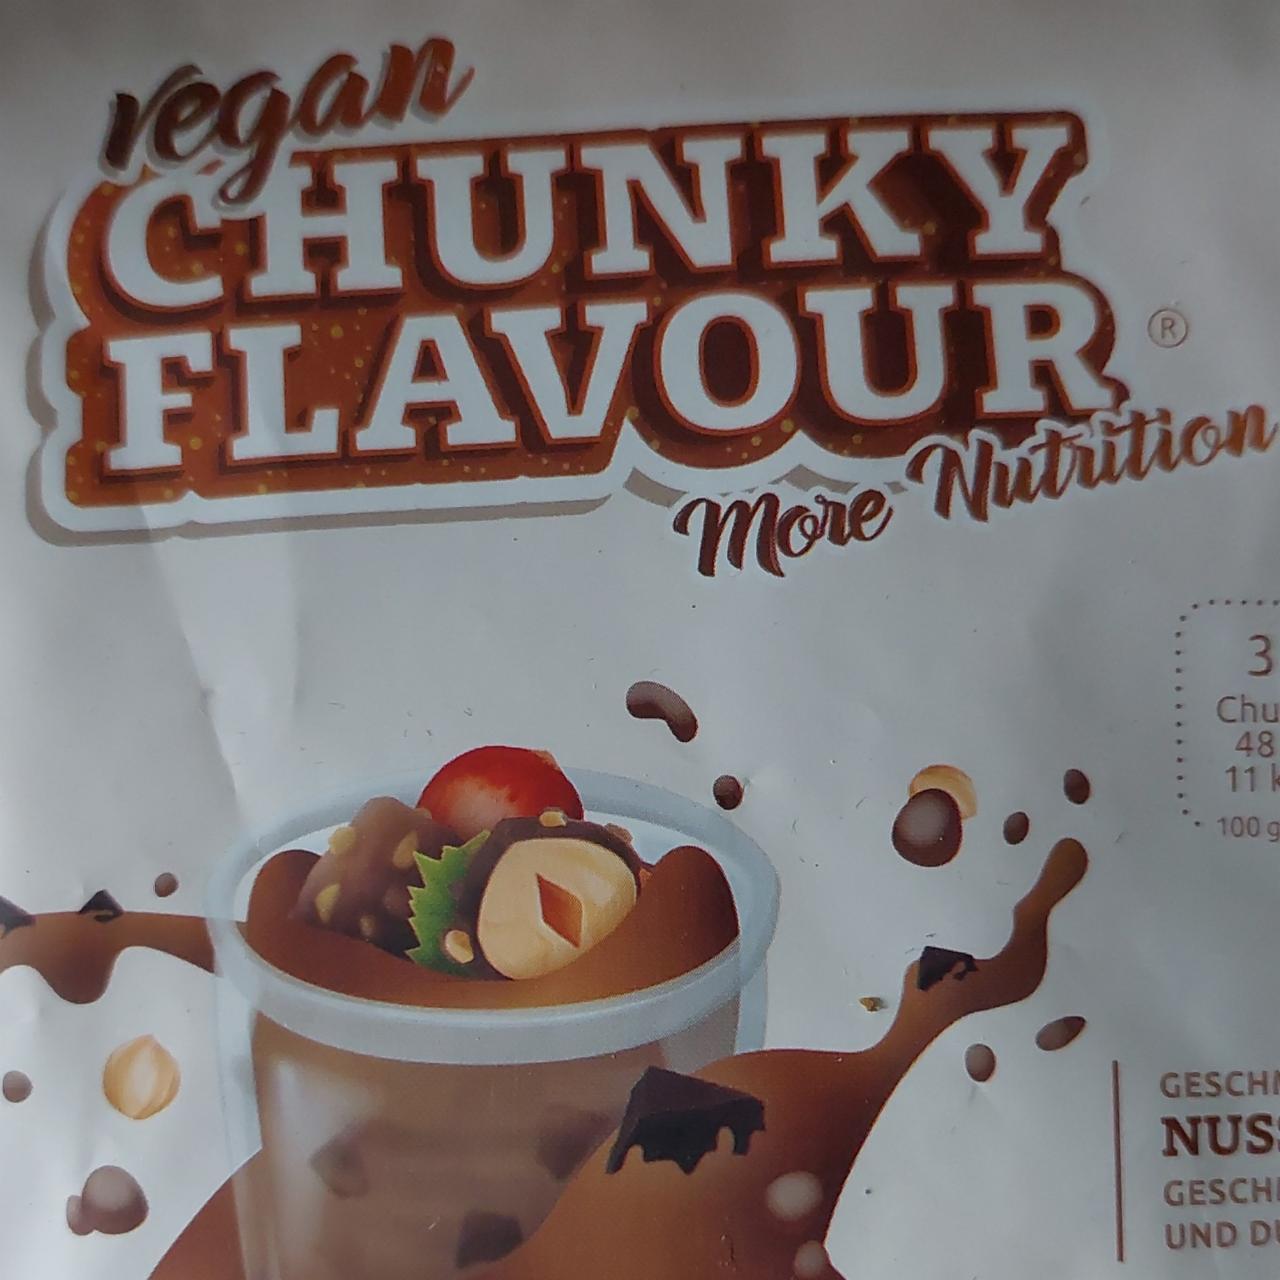 Fotografie - vegan chunky flavour Nuss-Nougat Praliné More Nutrition